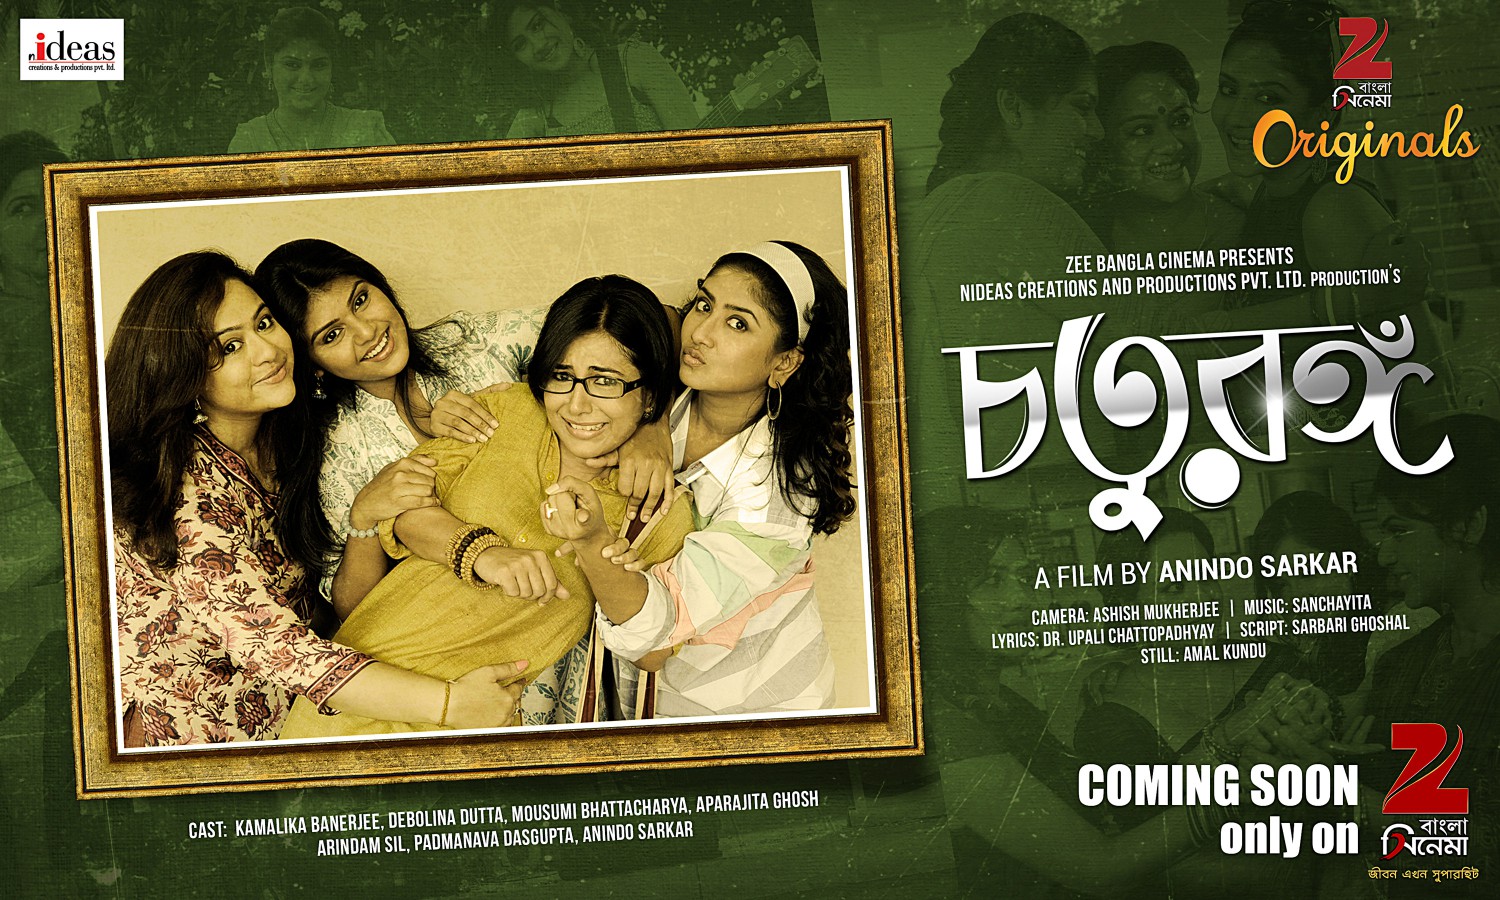 chaturanga bengali full movie download